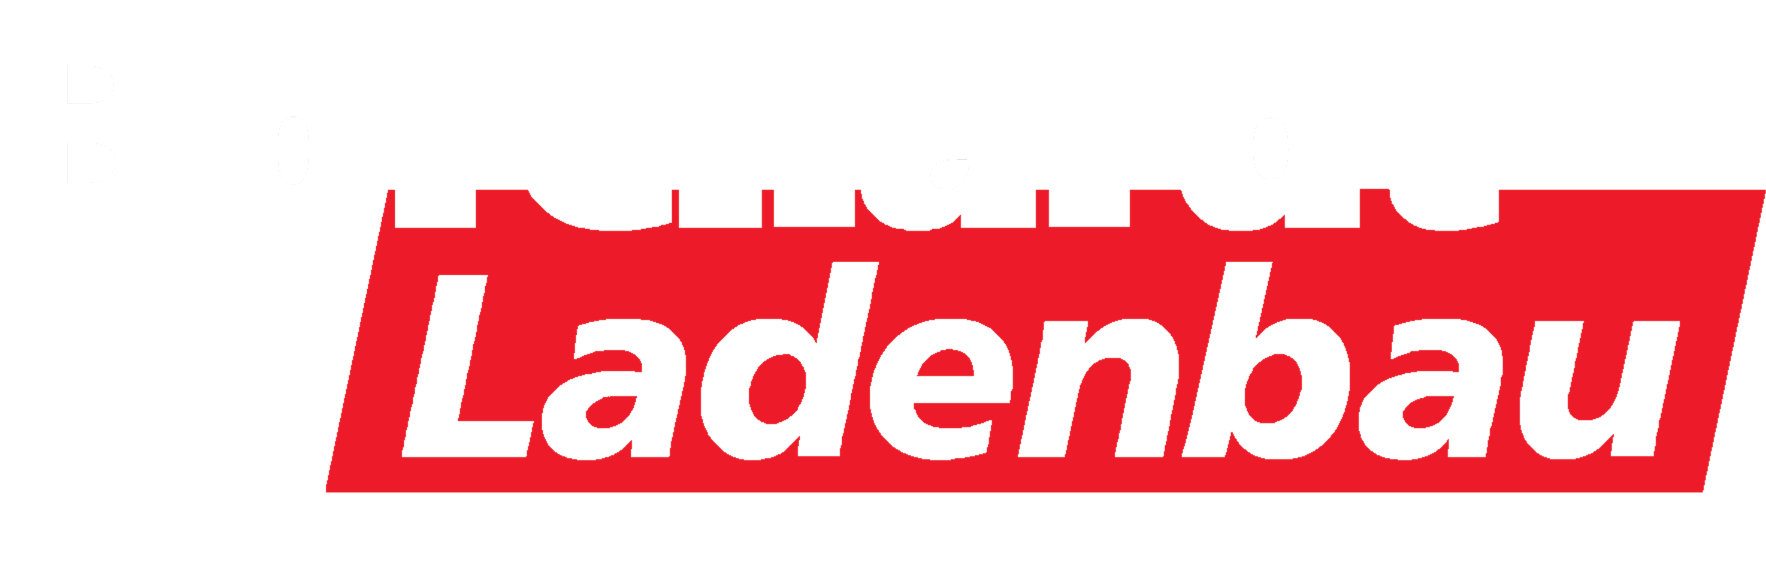 ein rot-weißes Logo für ladenbau auf weißem Hintergrund